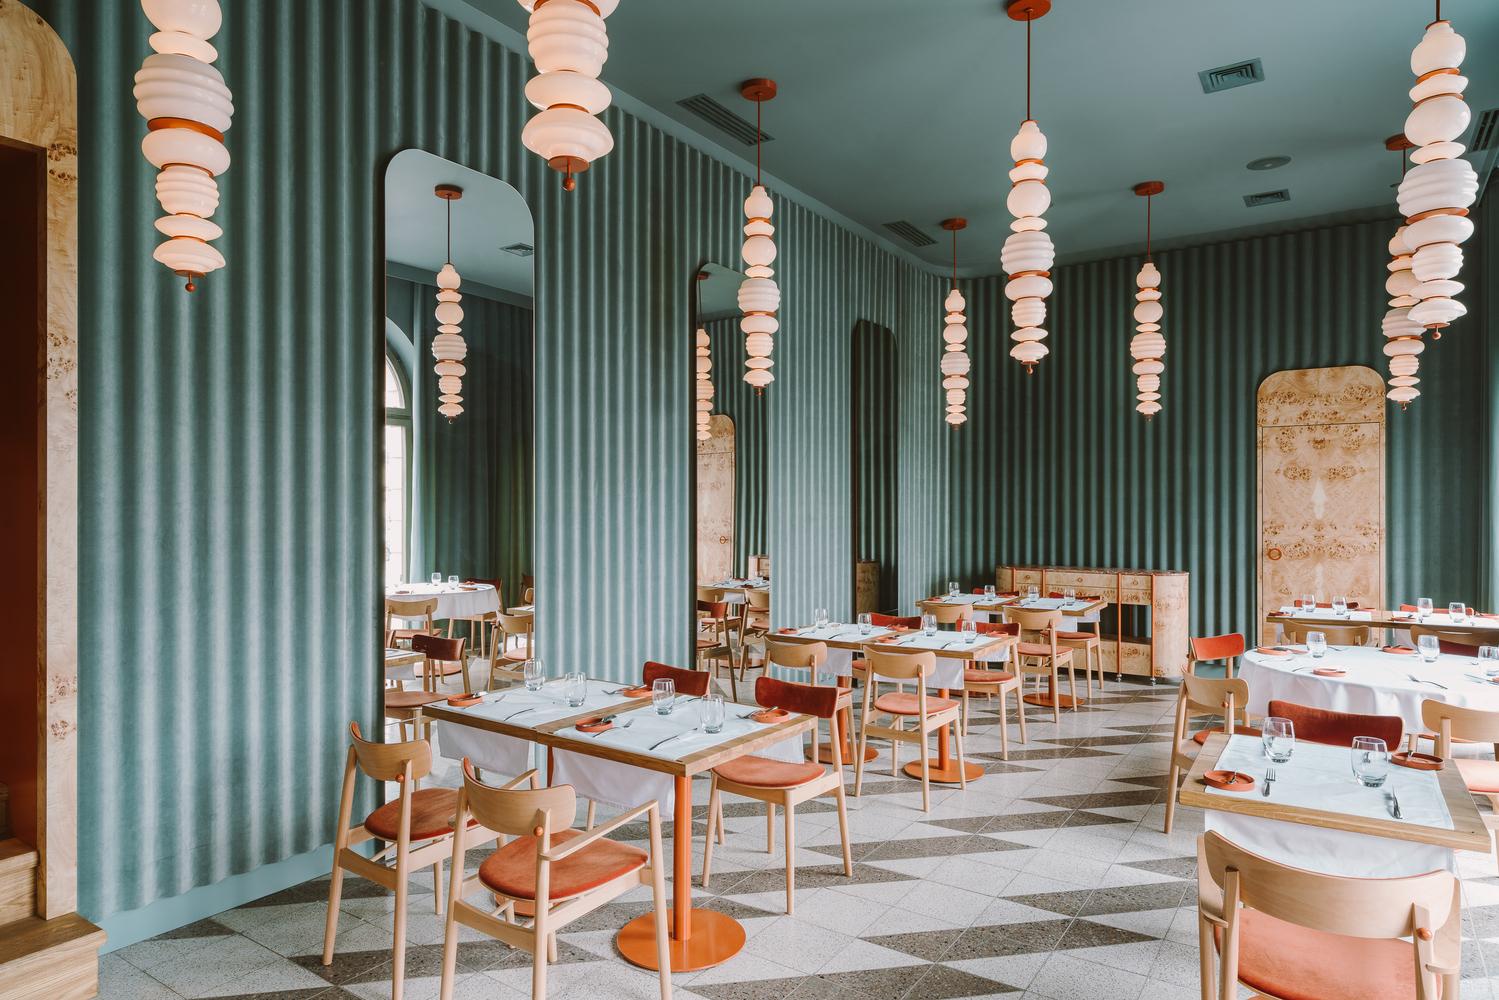 【波蘭華沙餐廳】 奢華裝潢配完美配色 營造出獨特美學體驗